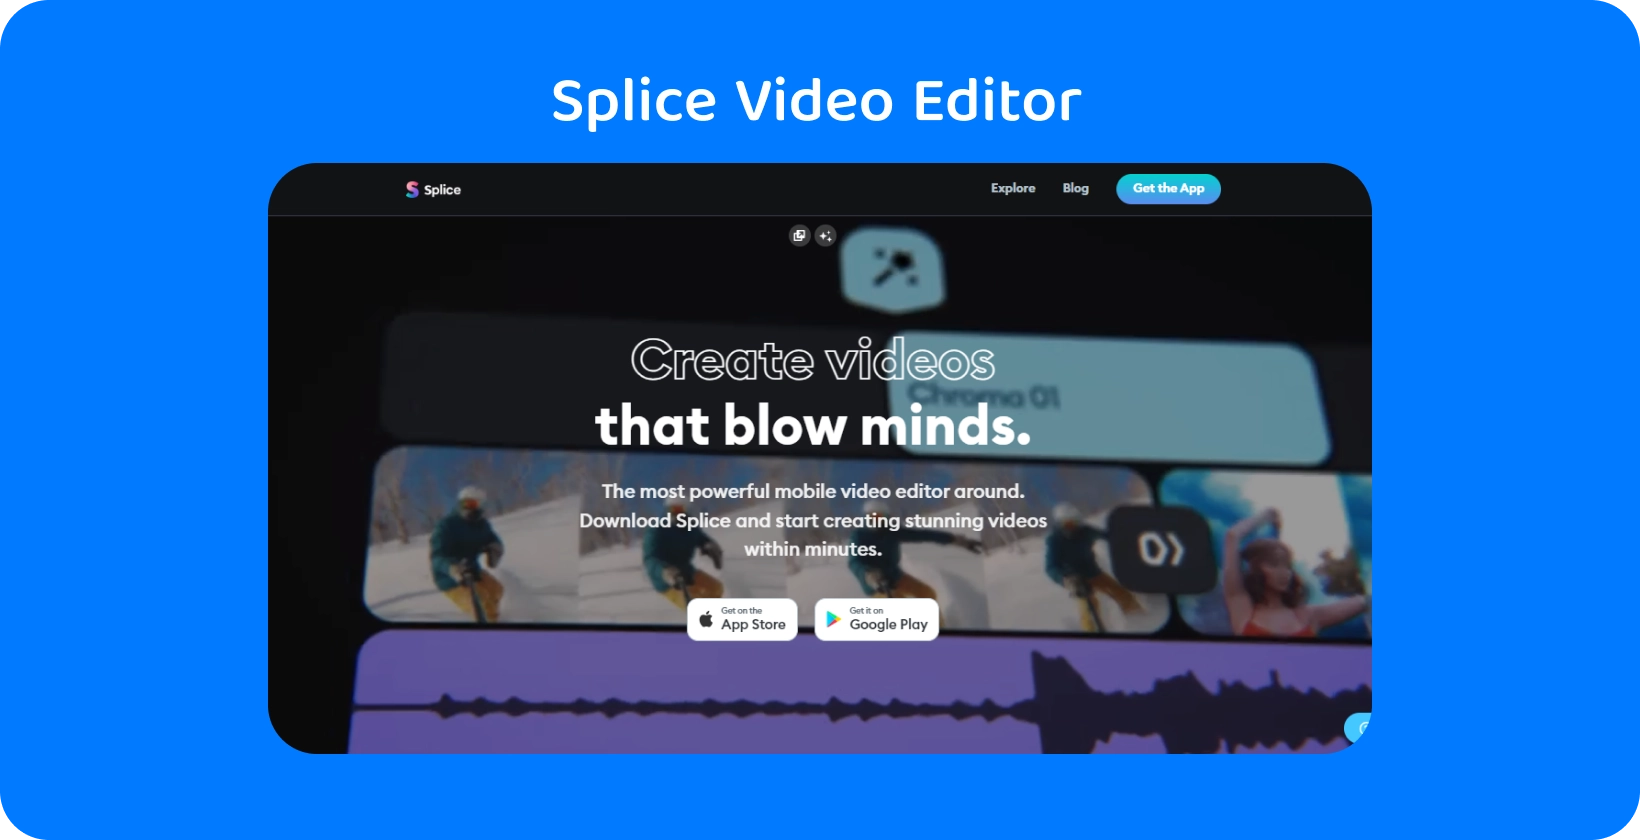 Splice ترويج التطبيق على هاتف ذكي ، ويروج له على أنه أقوى محرر فيديو محمول لإنشاء مقاطع فيديو مذهلة.